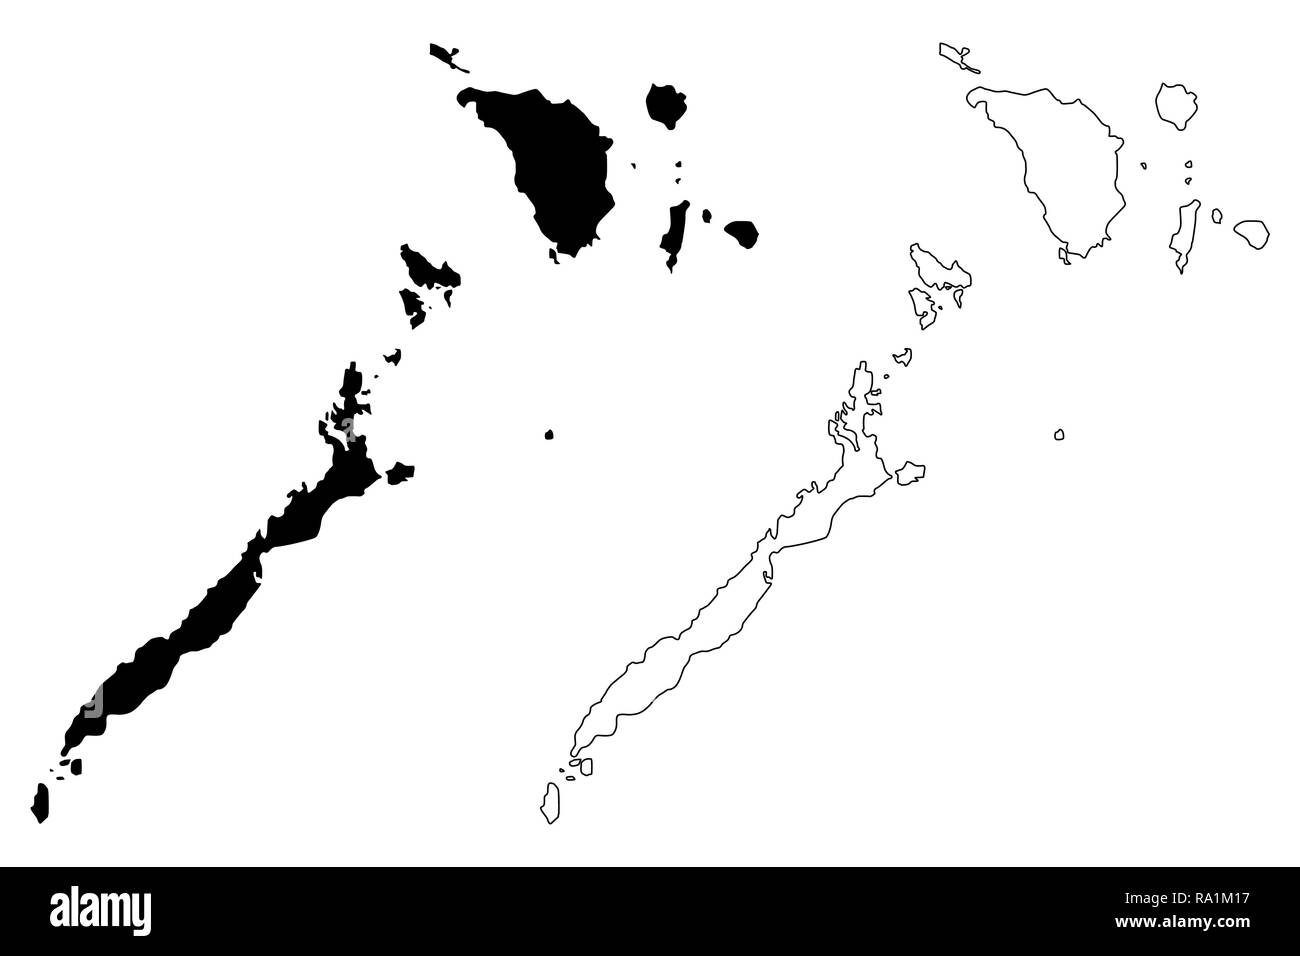 Mimaropa Region (Regionen und Provinzen der Philippinen, die Republik der Philippinen) Karte Vektor-illustration, kritzeln Skizze Southern Tagalog Main Stock Vektor